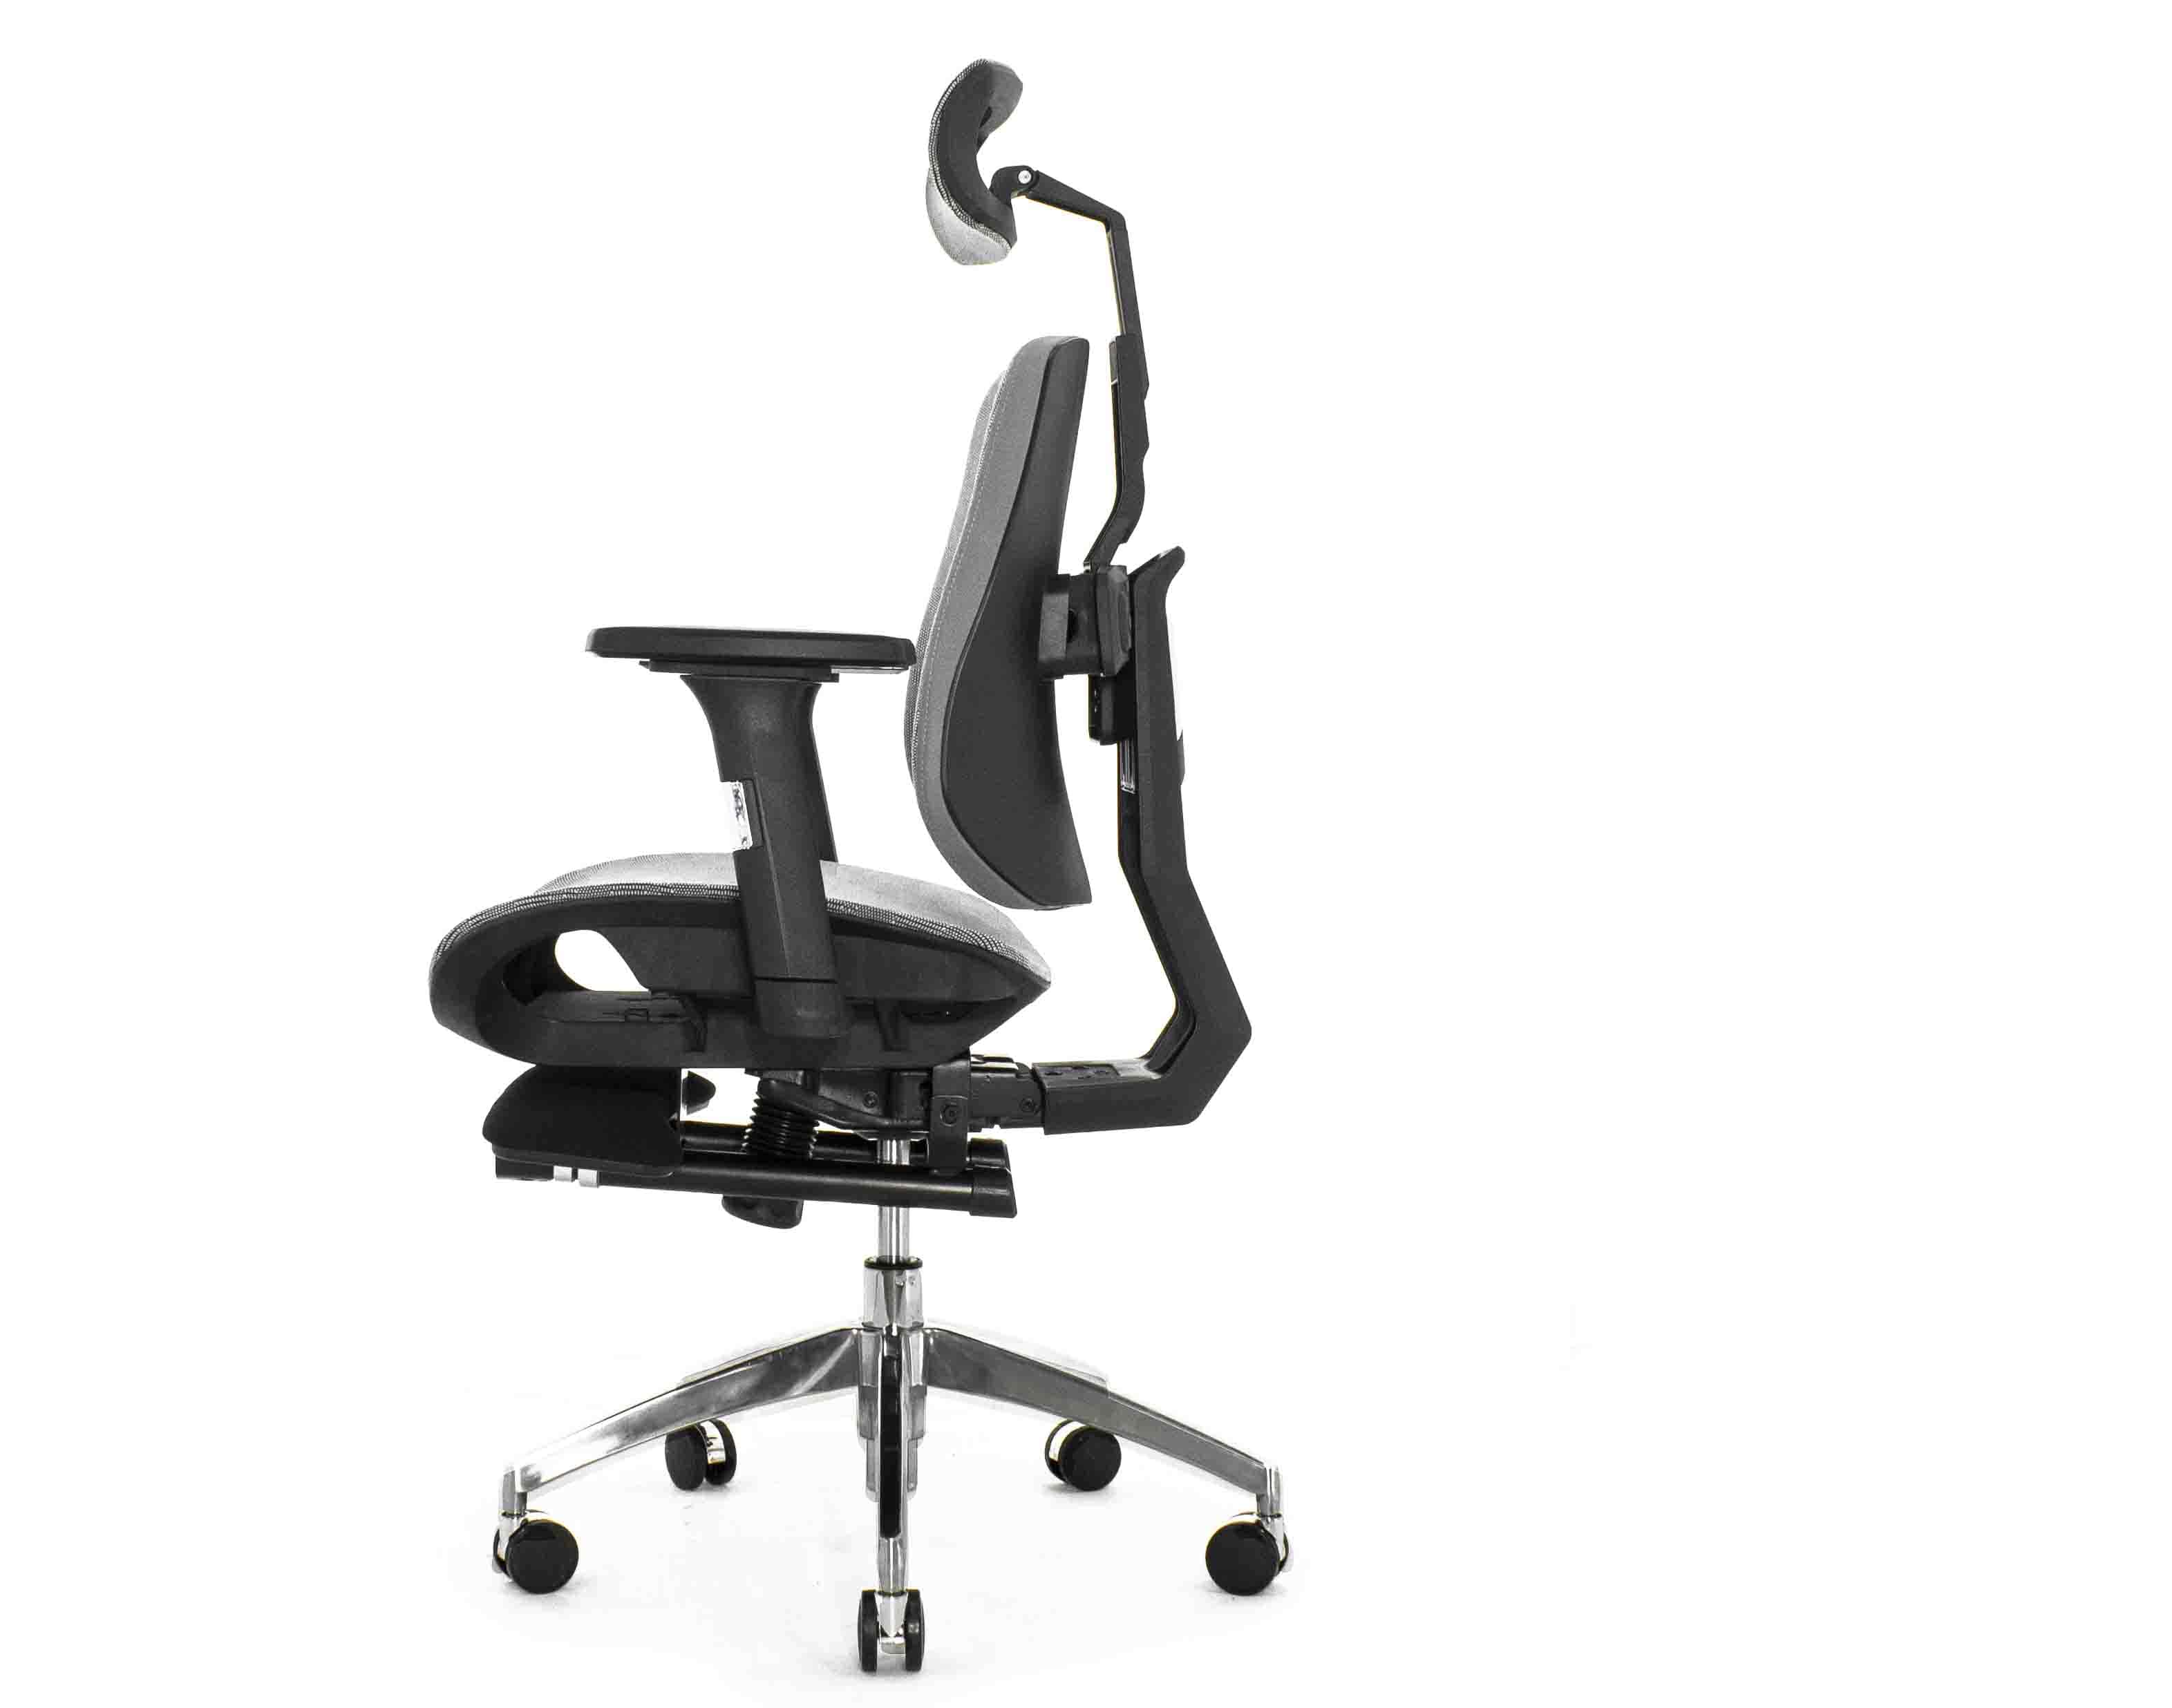 Ортопедическое кресло Falto BIONIC COMBI FOOTREST AMS-158A (черный каркас / обивка сетка GREY) с подножкой